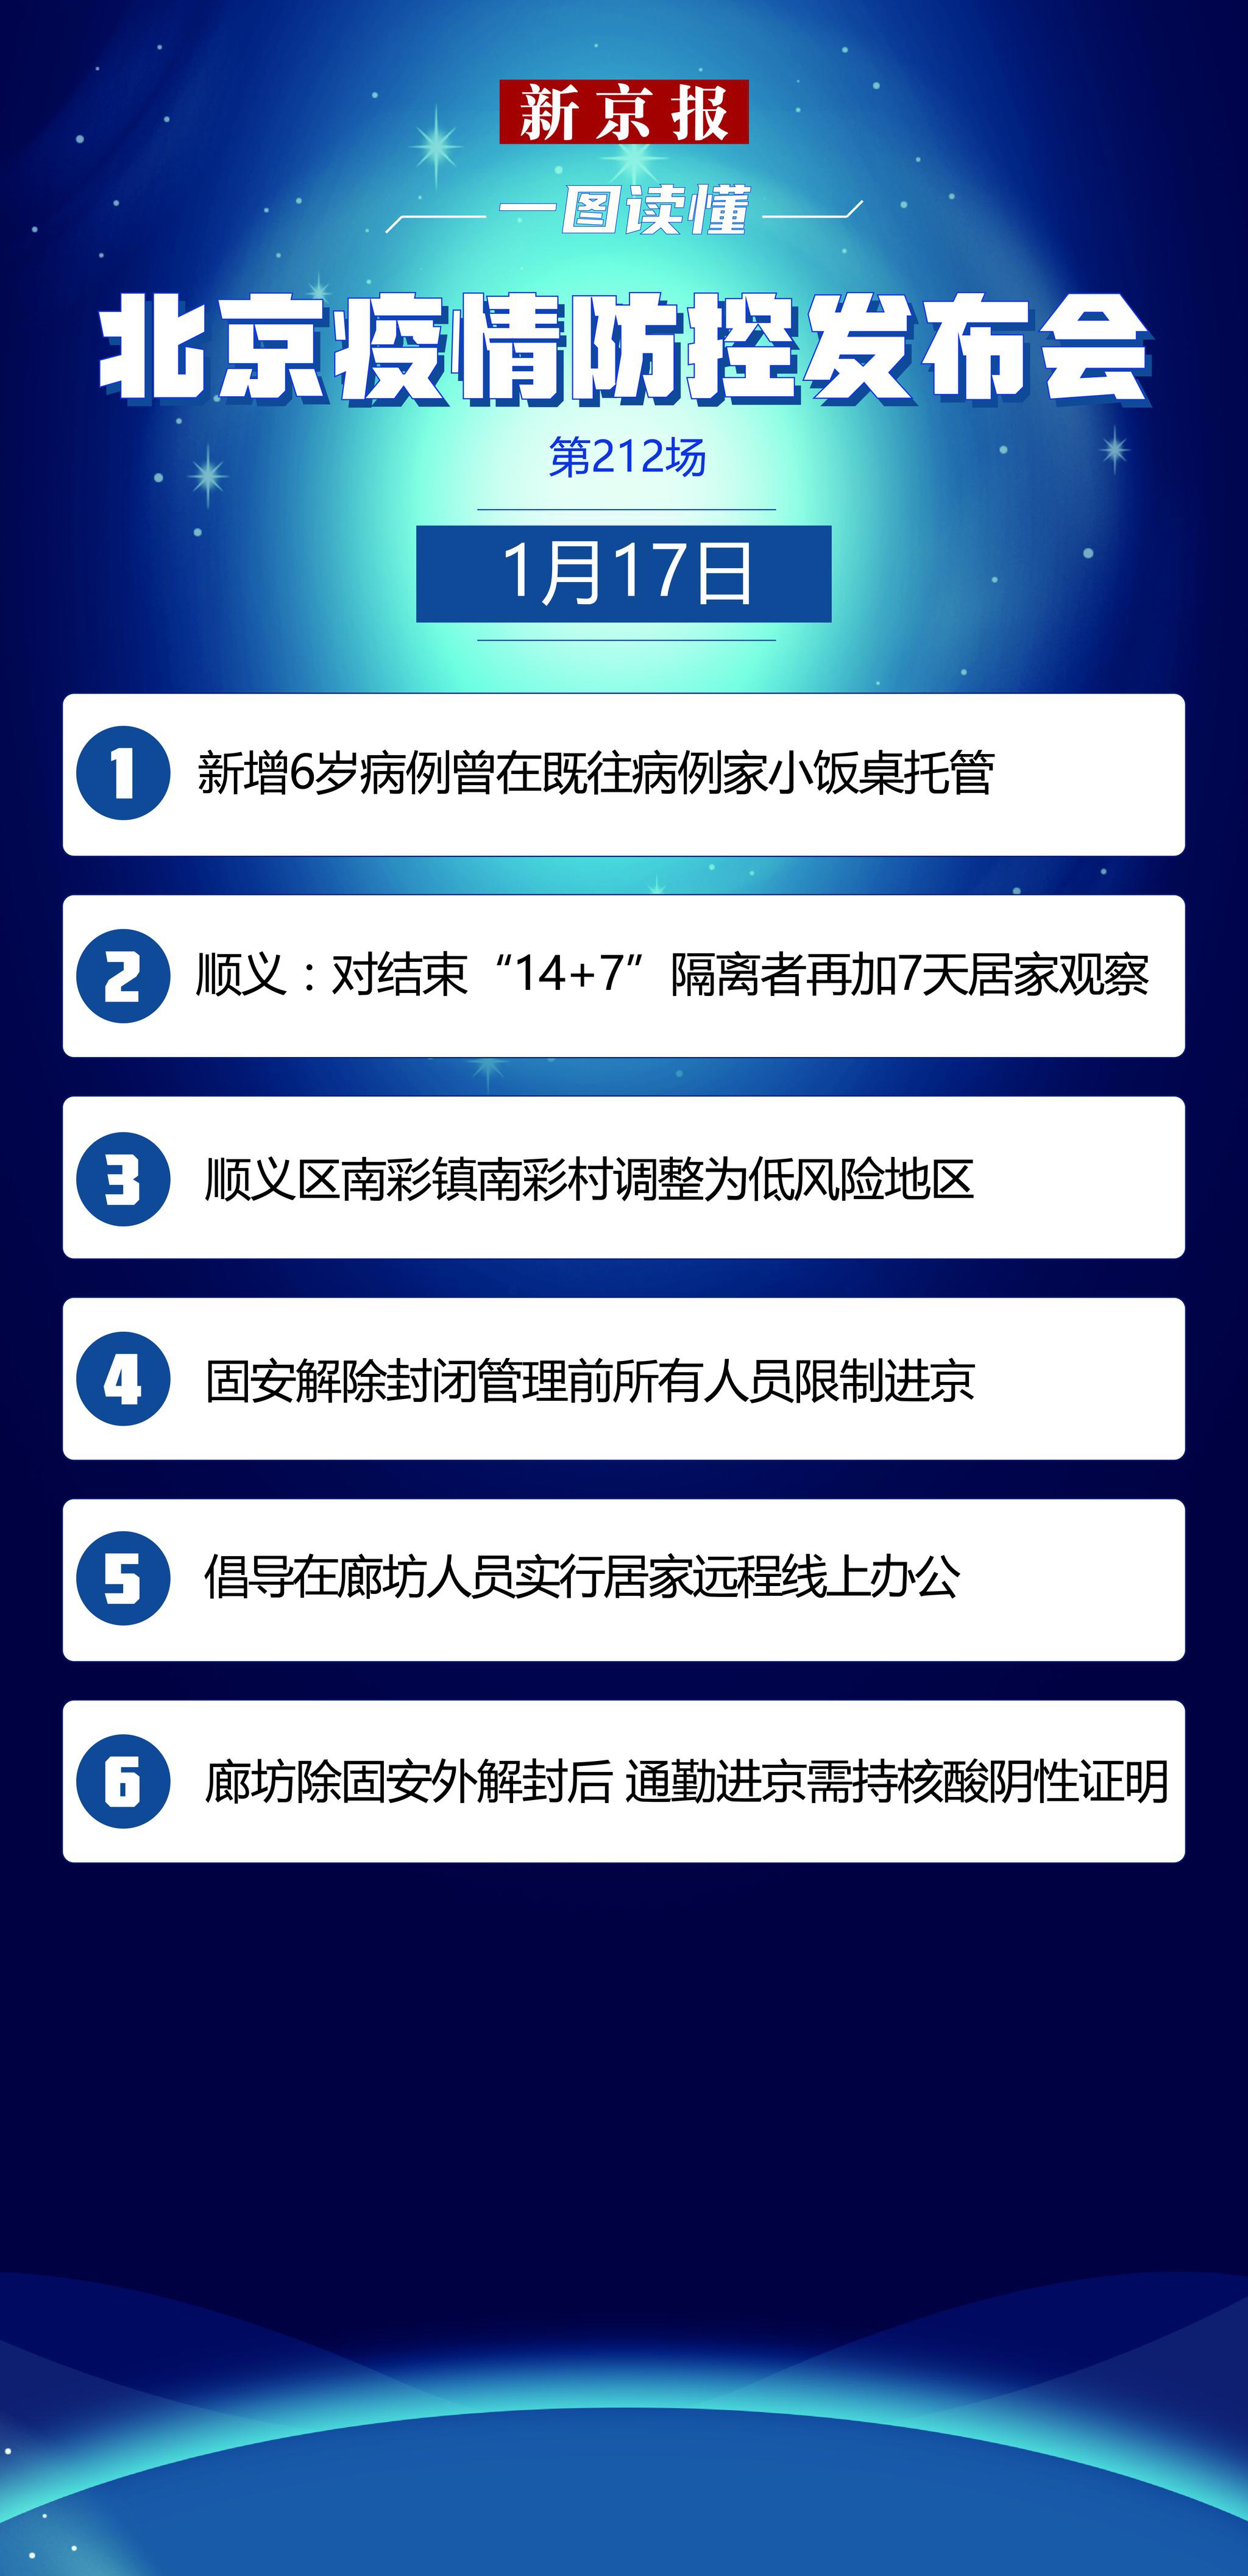 会议摘要│14+ 7 + 7顺义将再集中监控7天|顺义|隔离区|北京_新浪科技_Sina.com